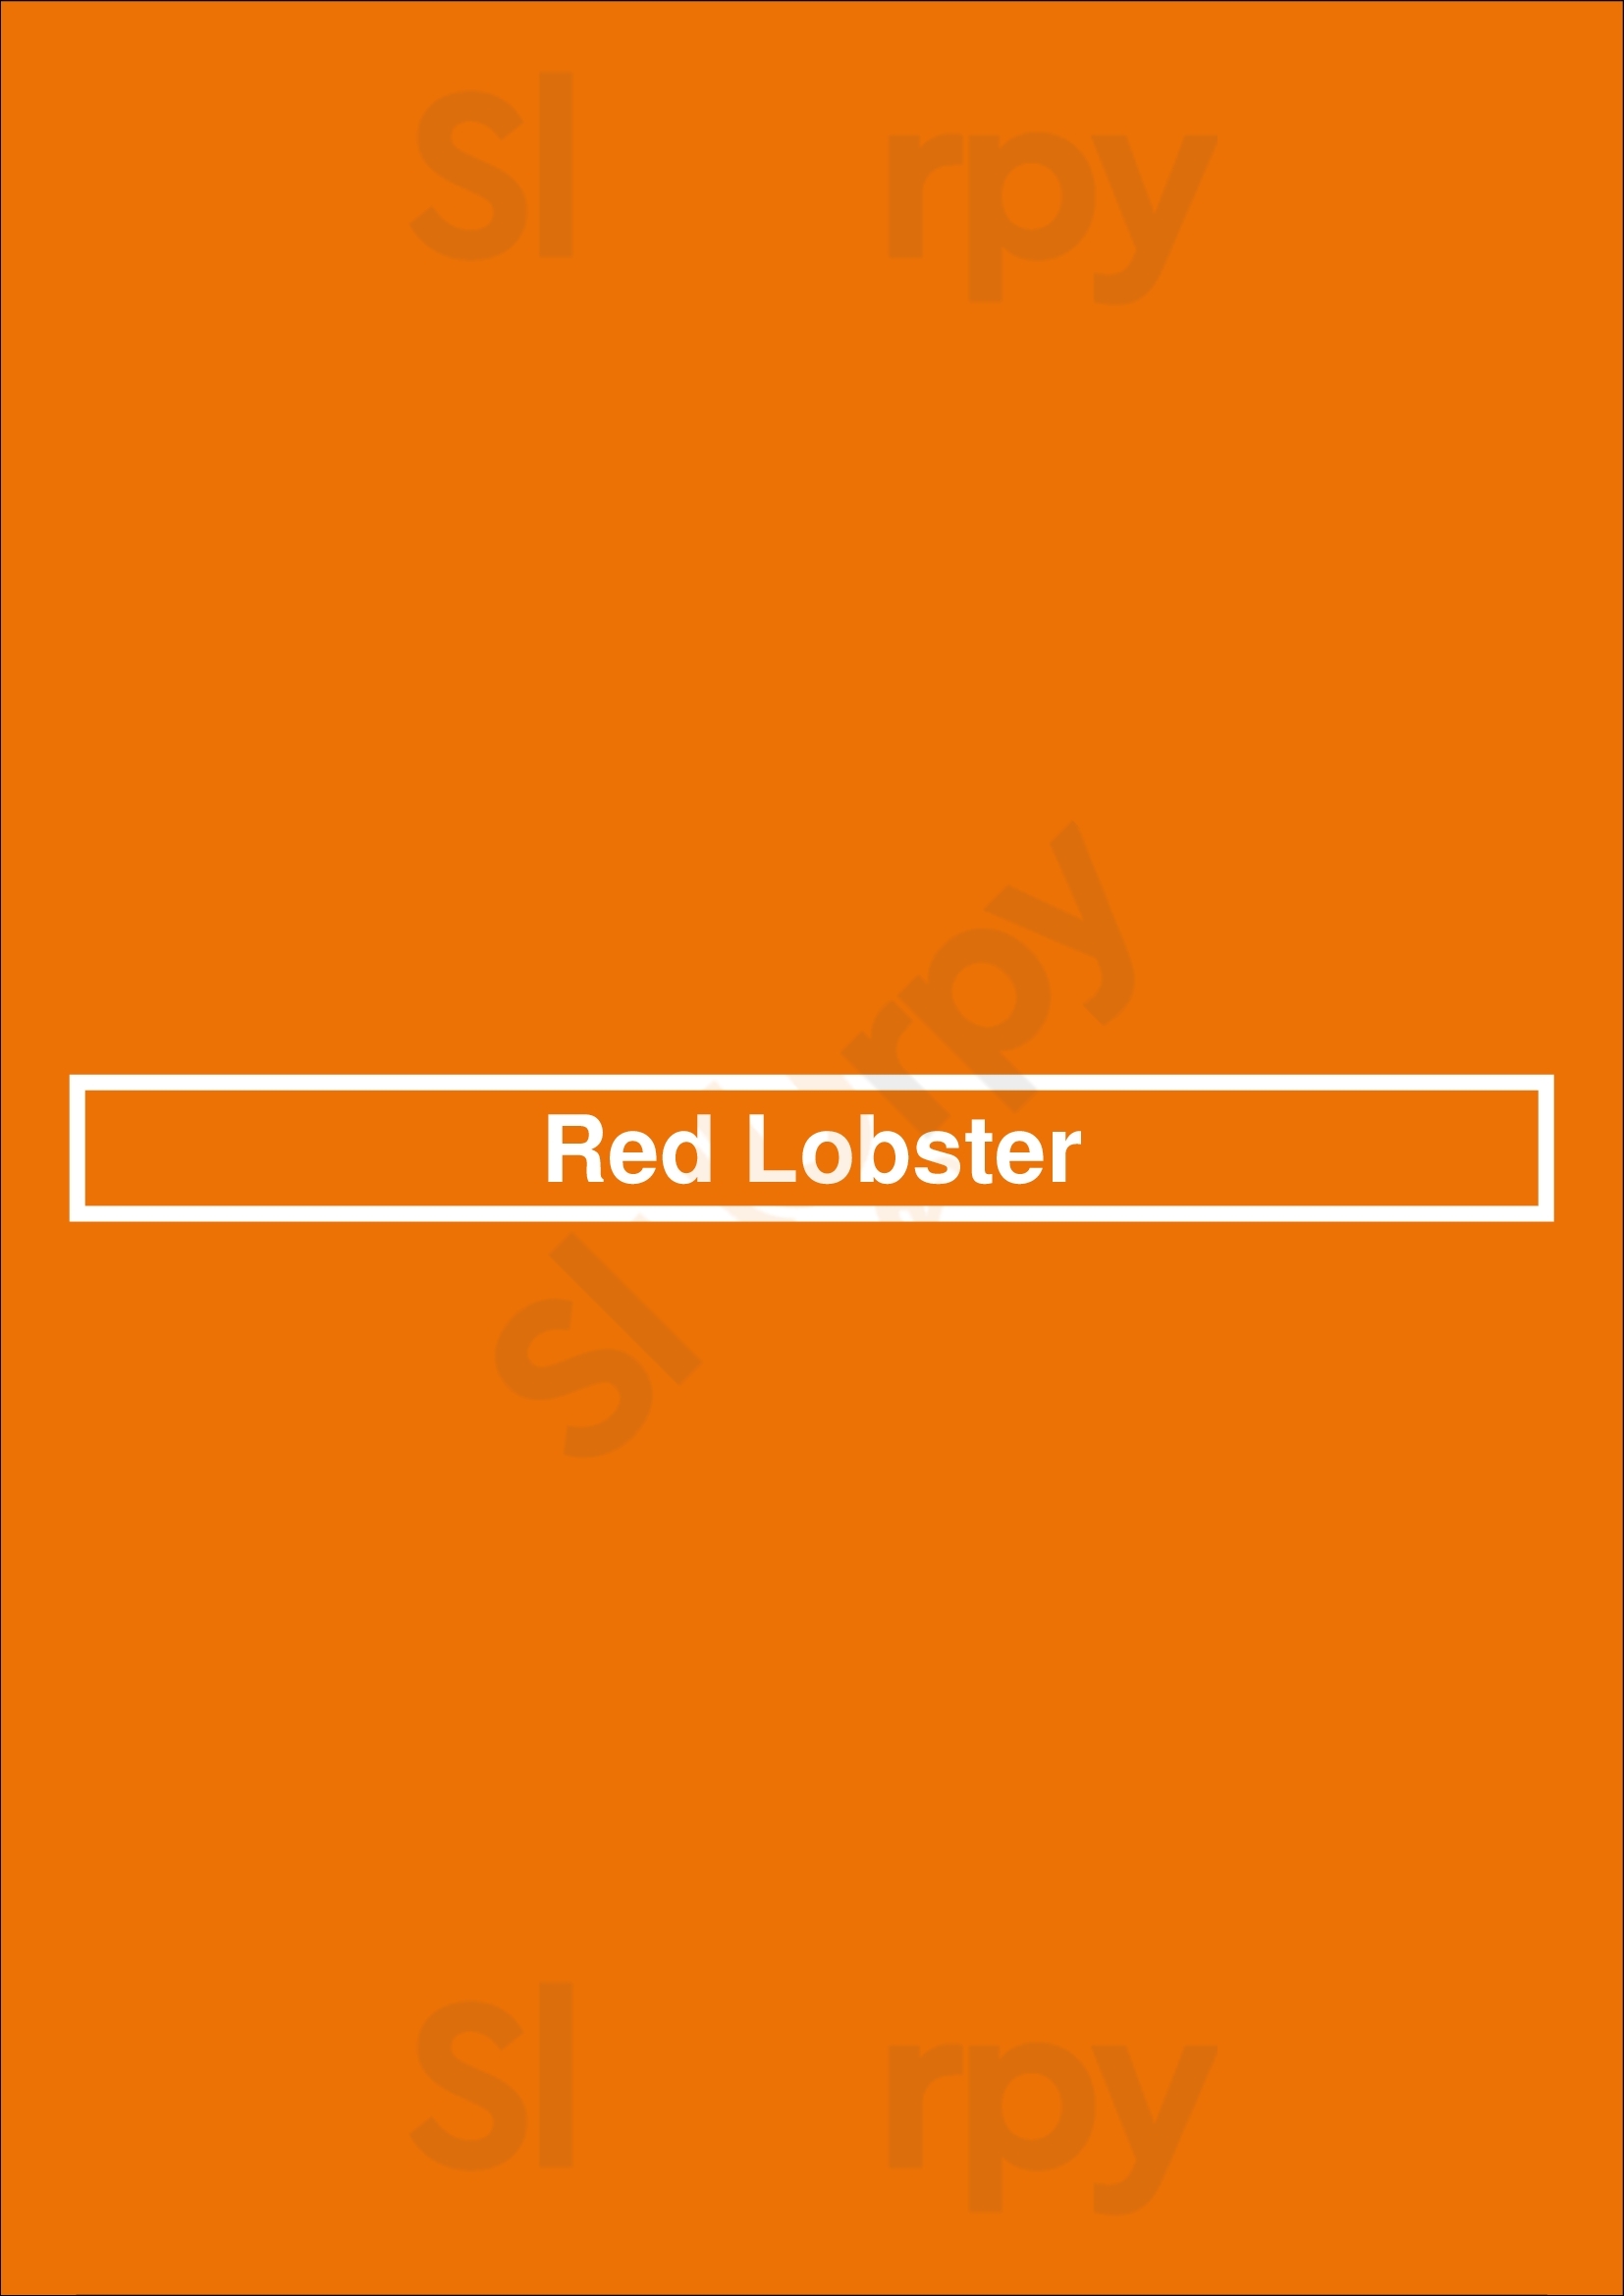 Red Lobster Scottsdale Menu - 1